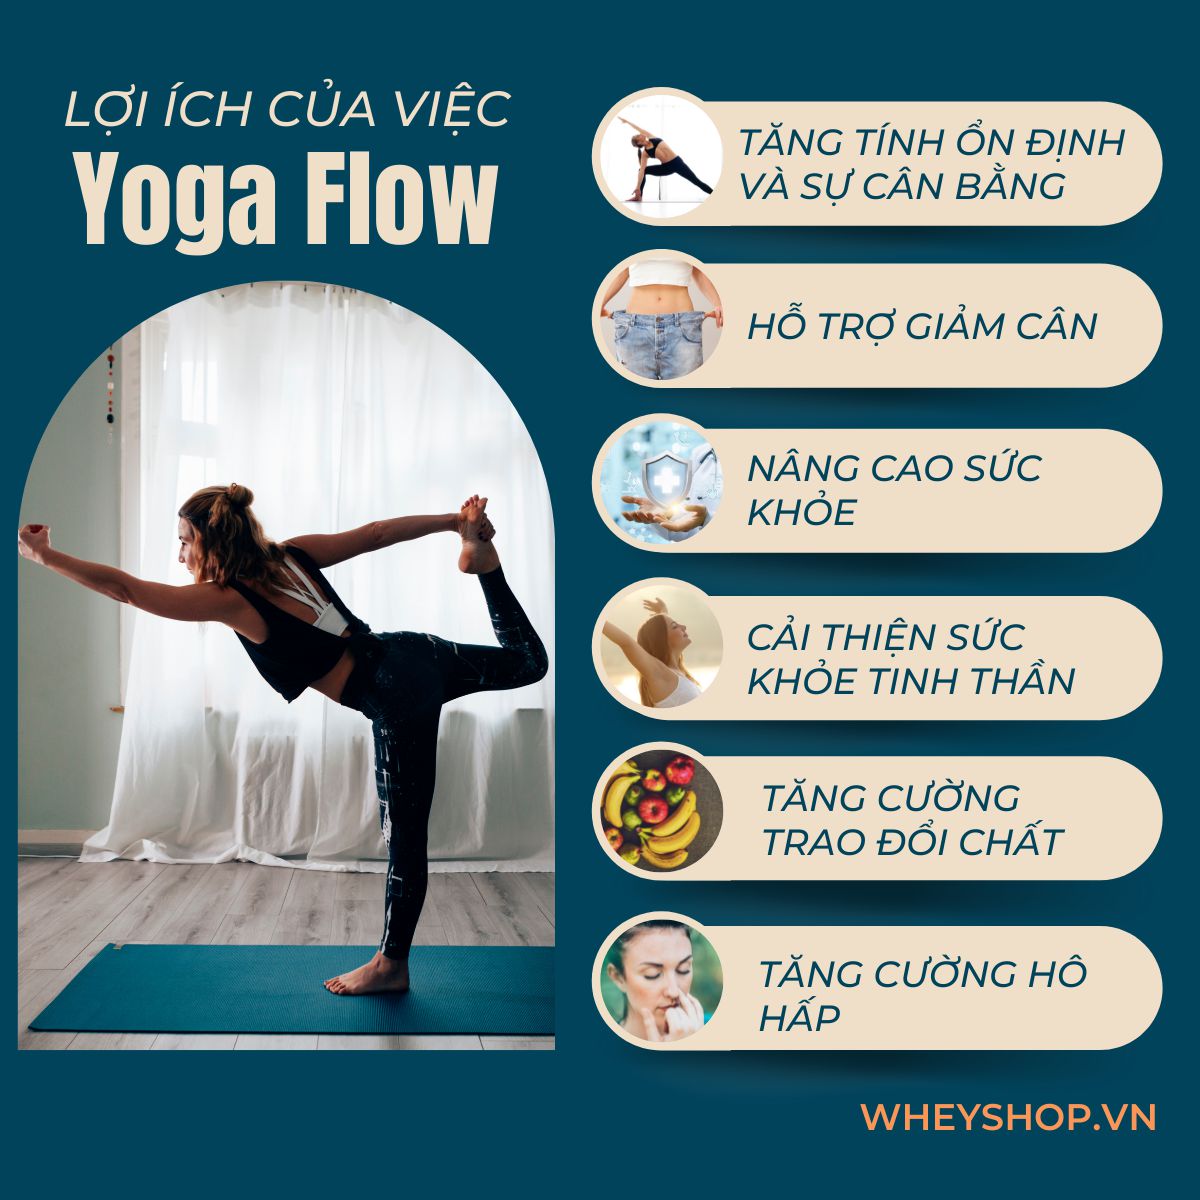 Nếu như bạn là người mới bắt đầu tập Yoga thì hẳn sẽ cảm thấy khá băn khoăn về phương pháp tập Yoga Flow là gì. Bài viết này, WheyShop sẽ cùng các bạn tìm...